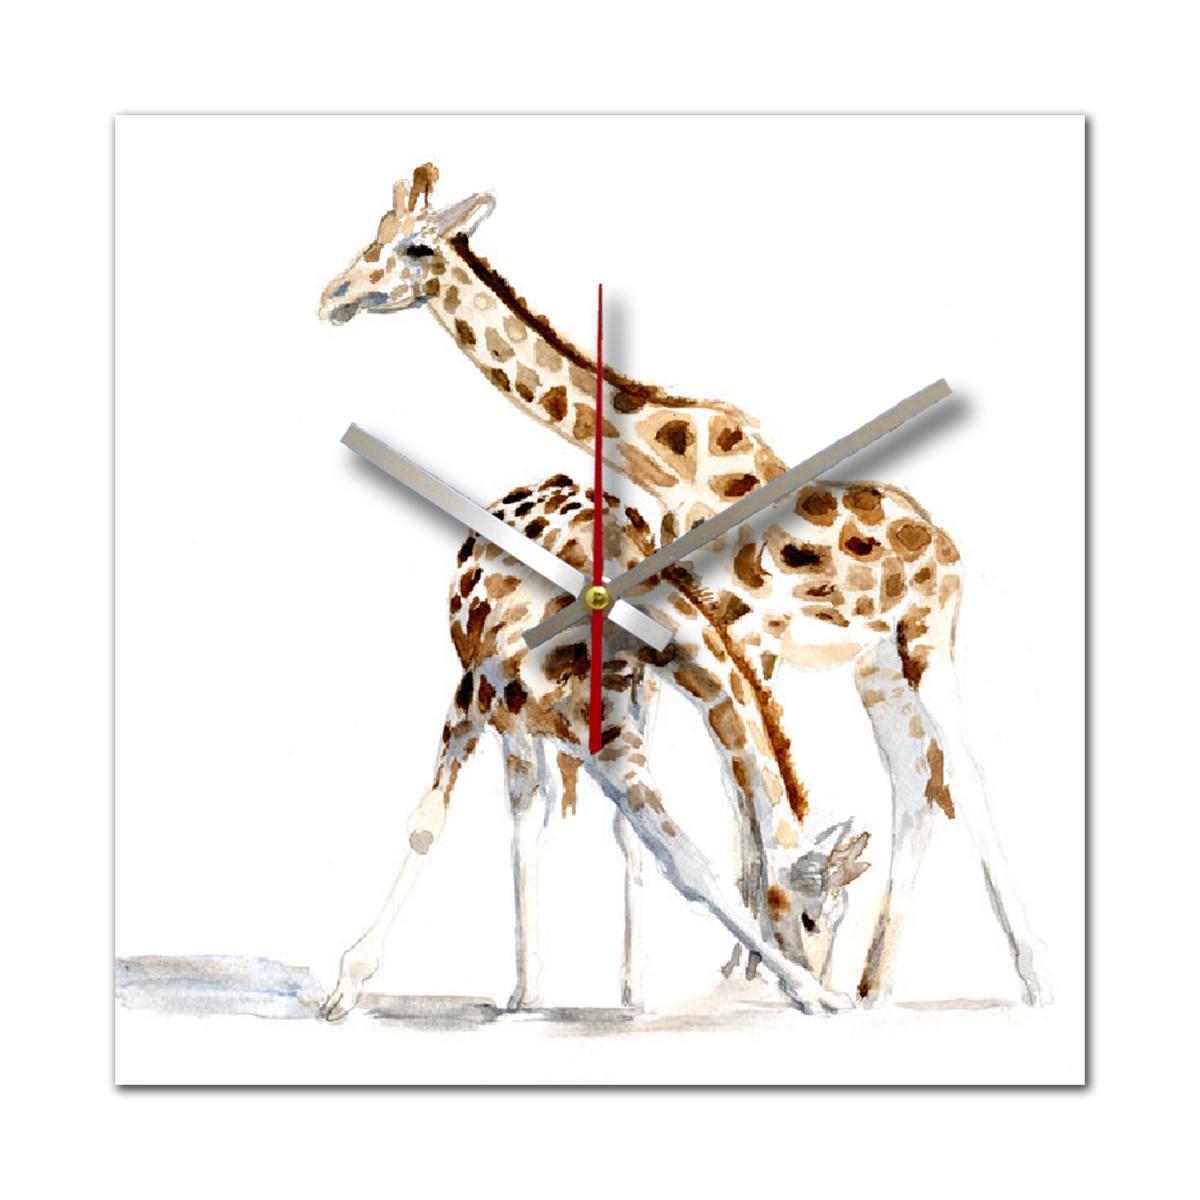 Jam Dinding Unik - Giraffe